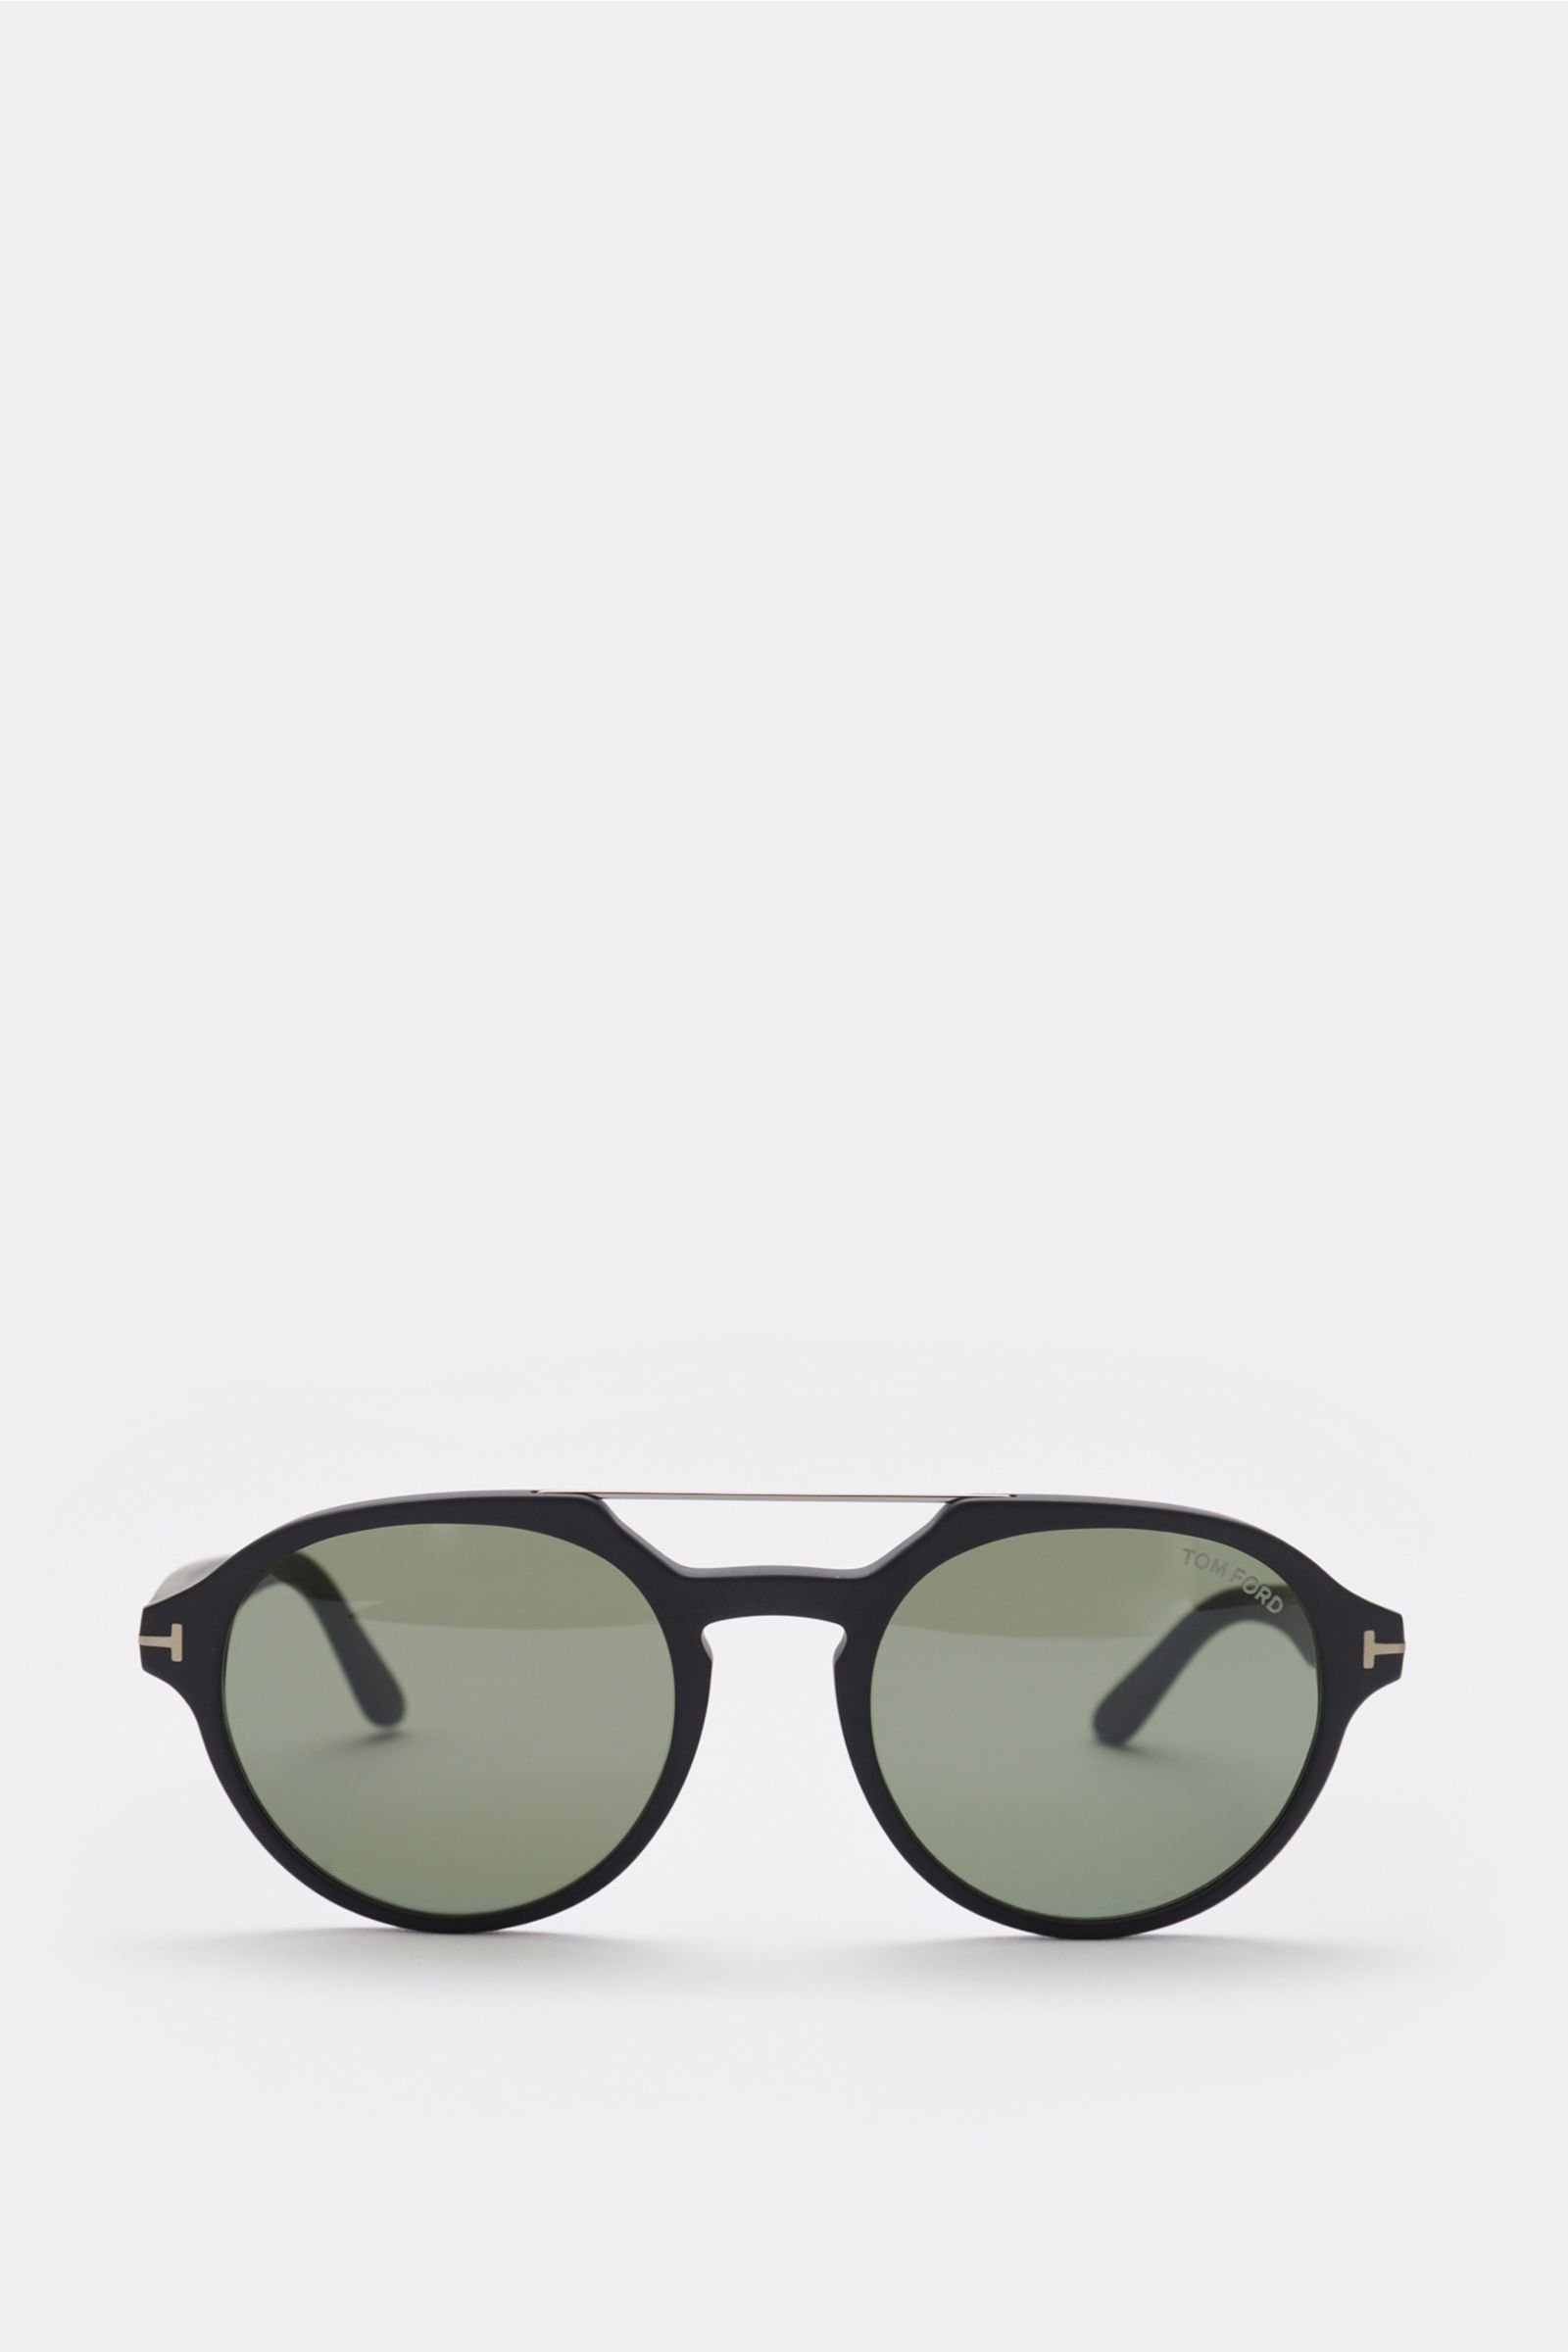 Sonnenbrille 'Stan' grau/grün